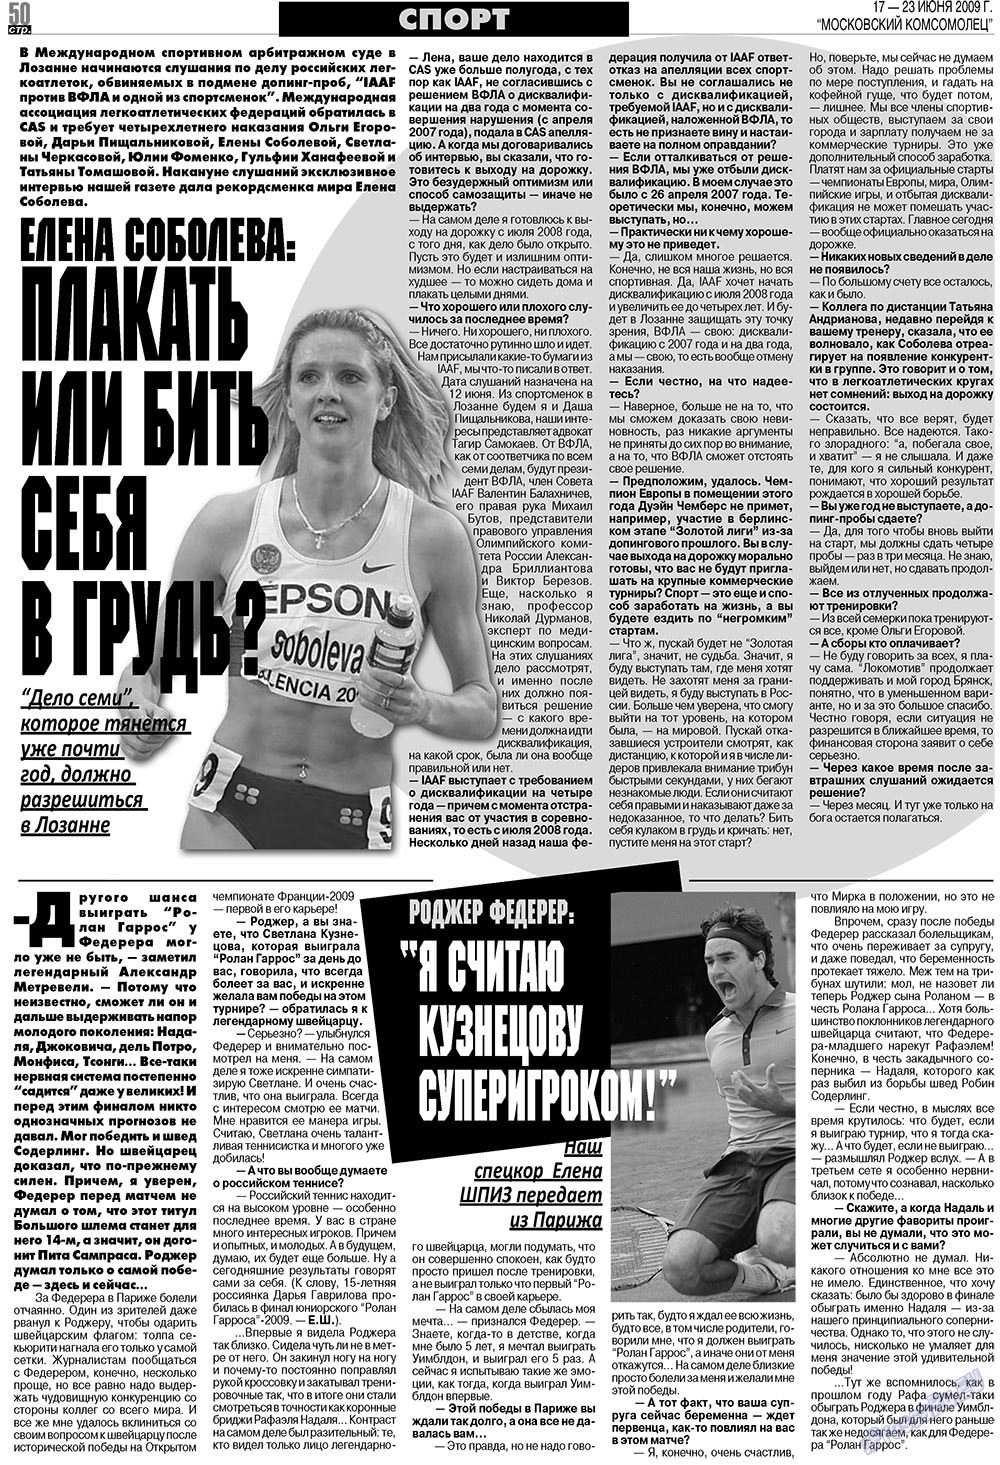 МК Испания, газета. 2009 №25 стр.50